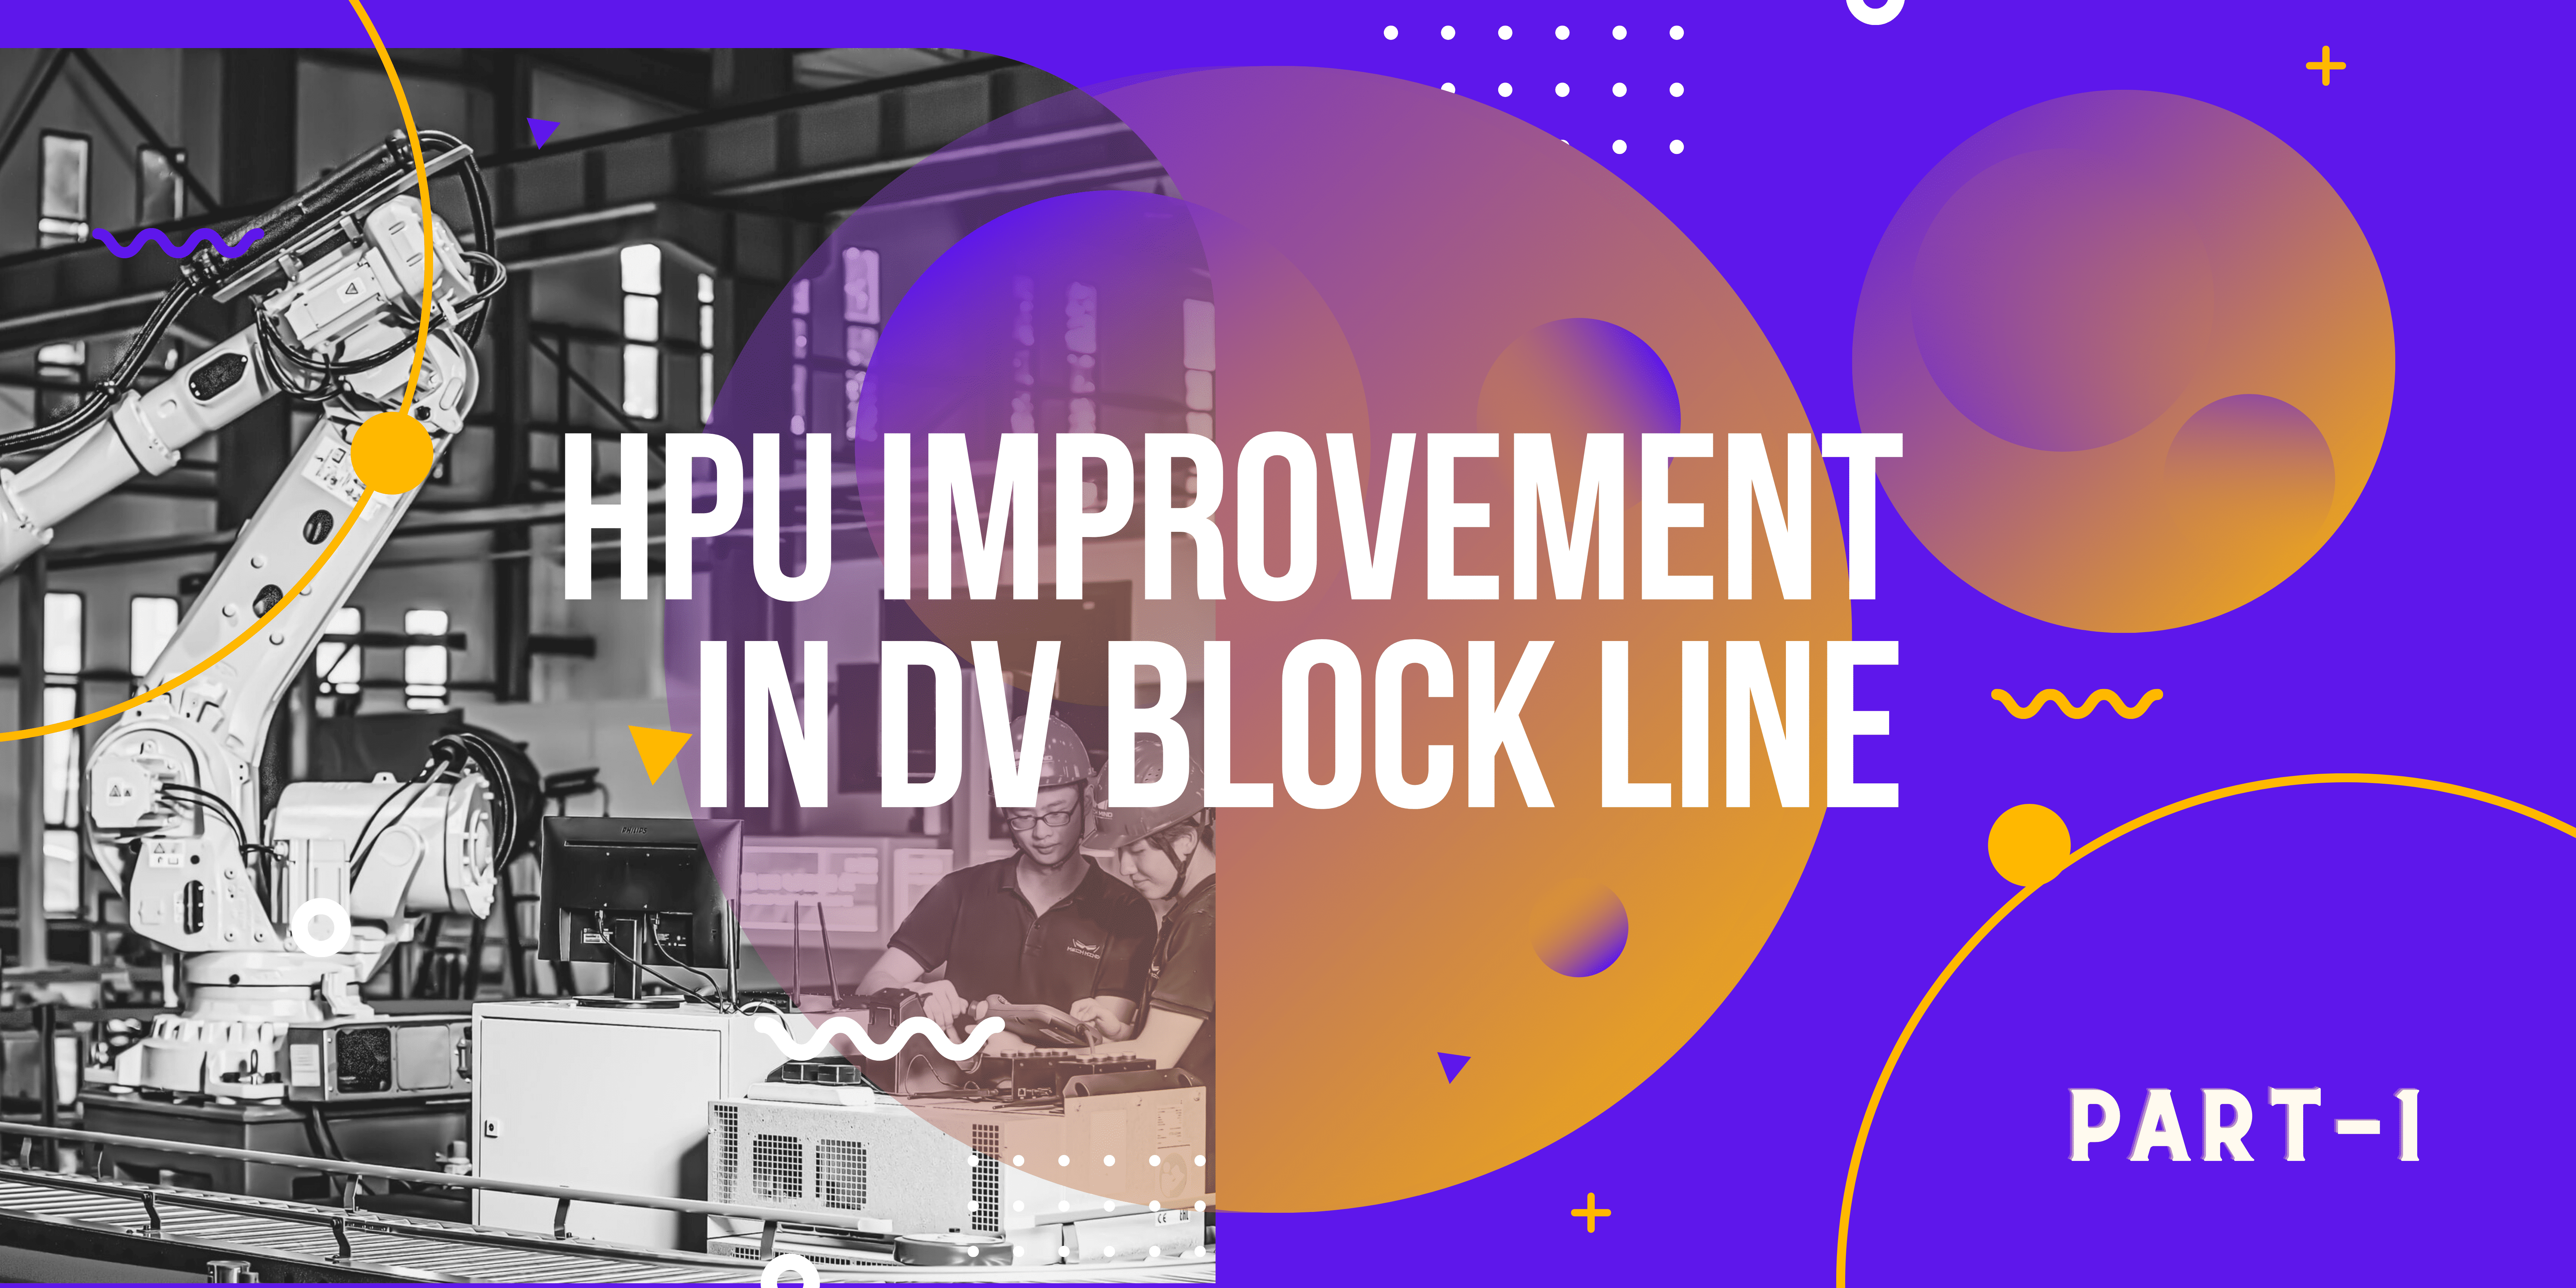 HPU improvement in DV block line